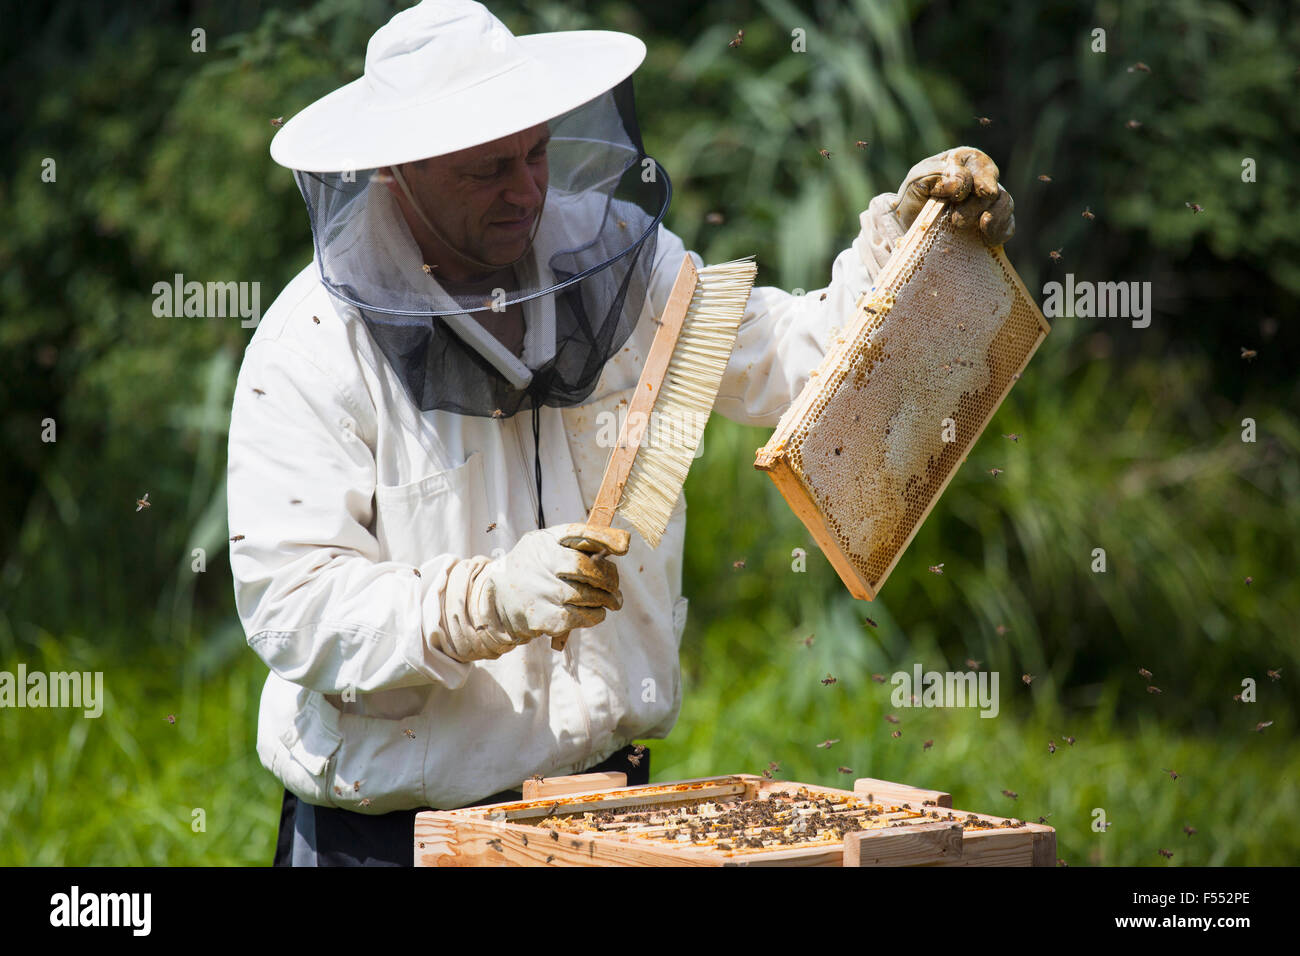 El apicultor de cepillado del bastidor de colmena de abejas en la granja Foto de stock